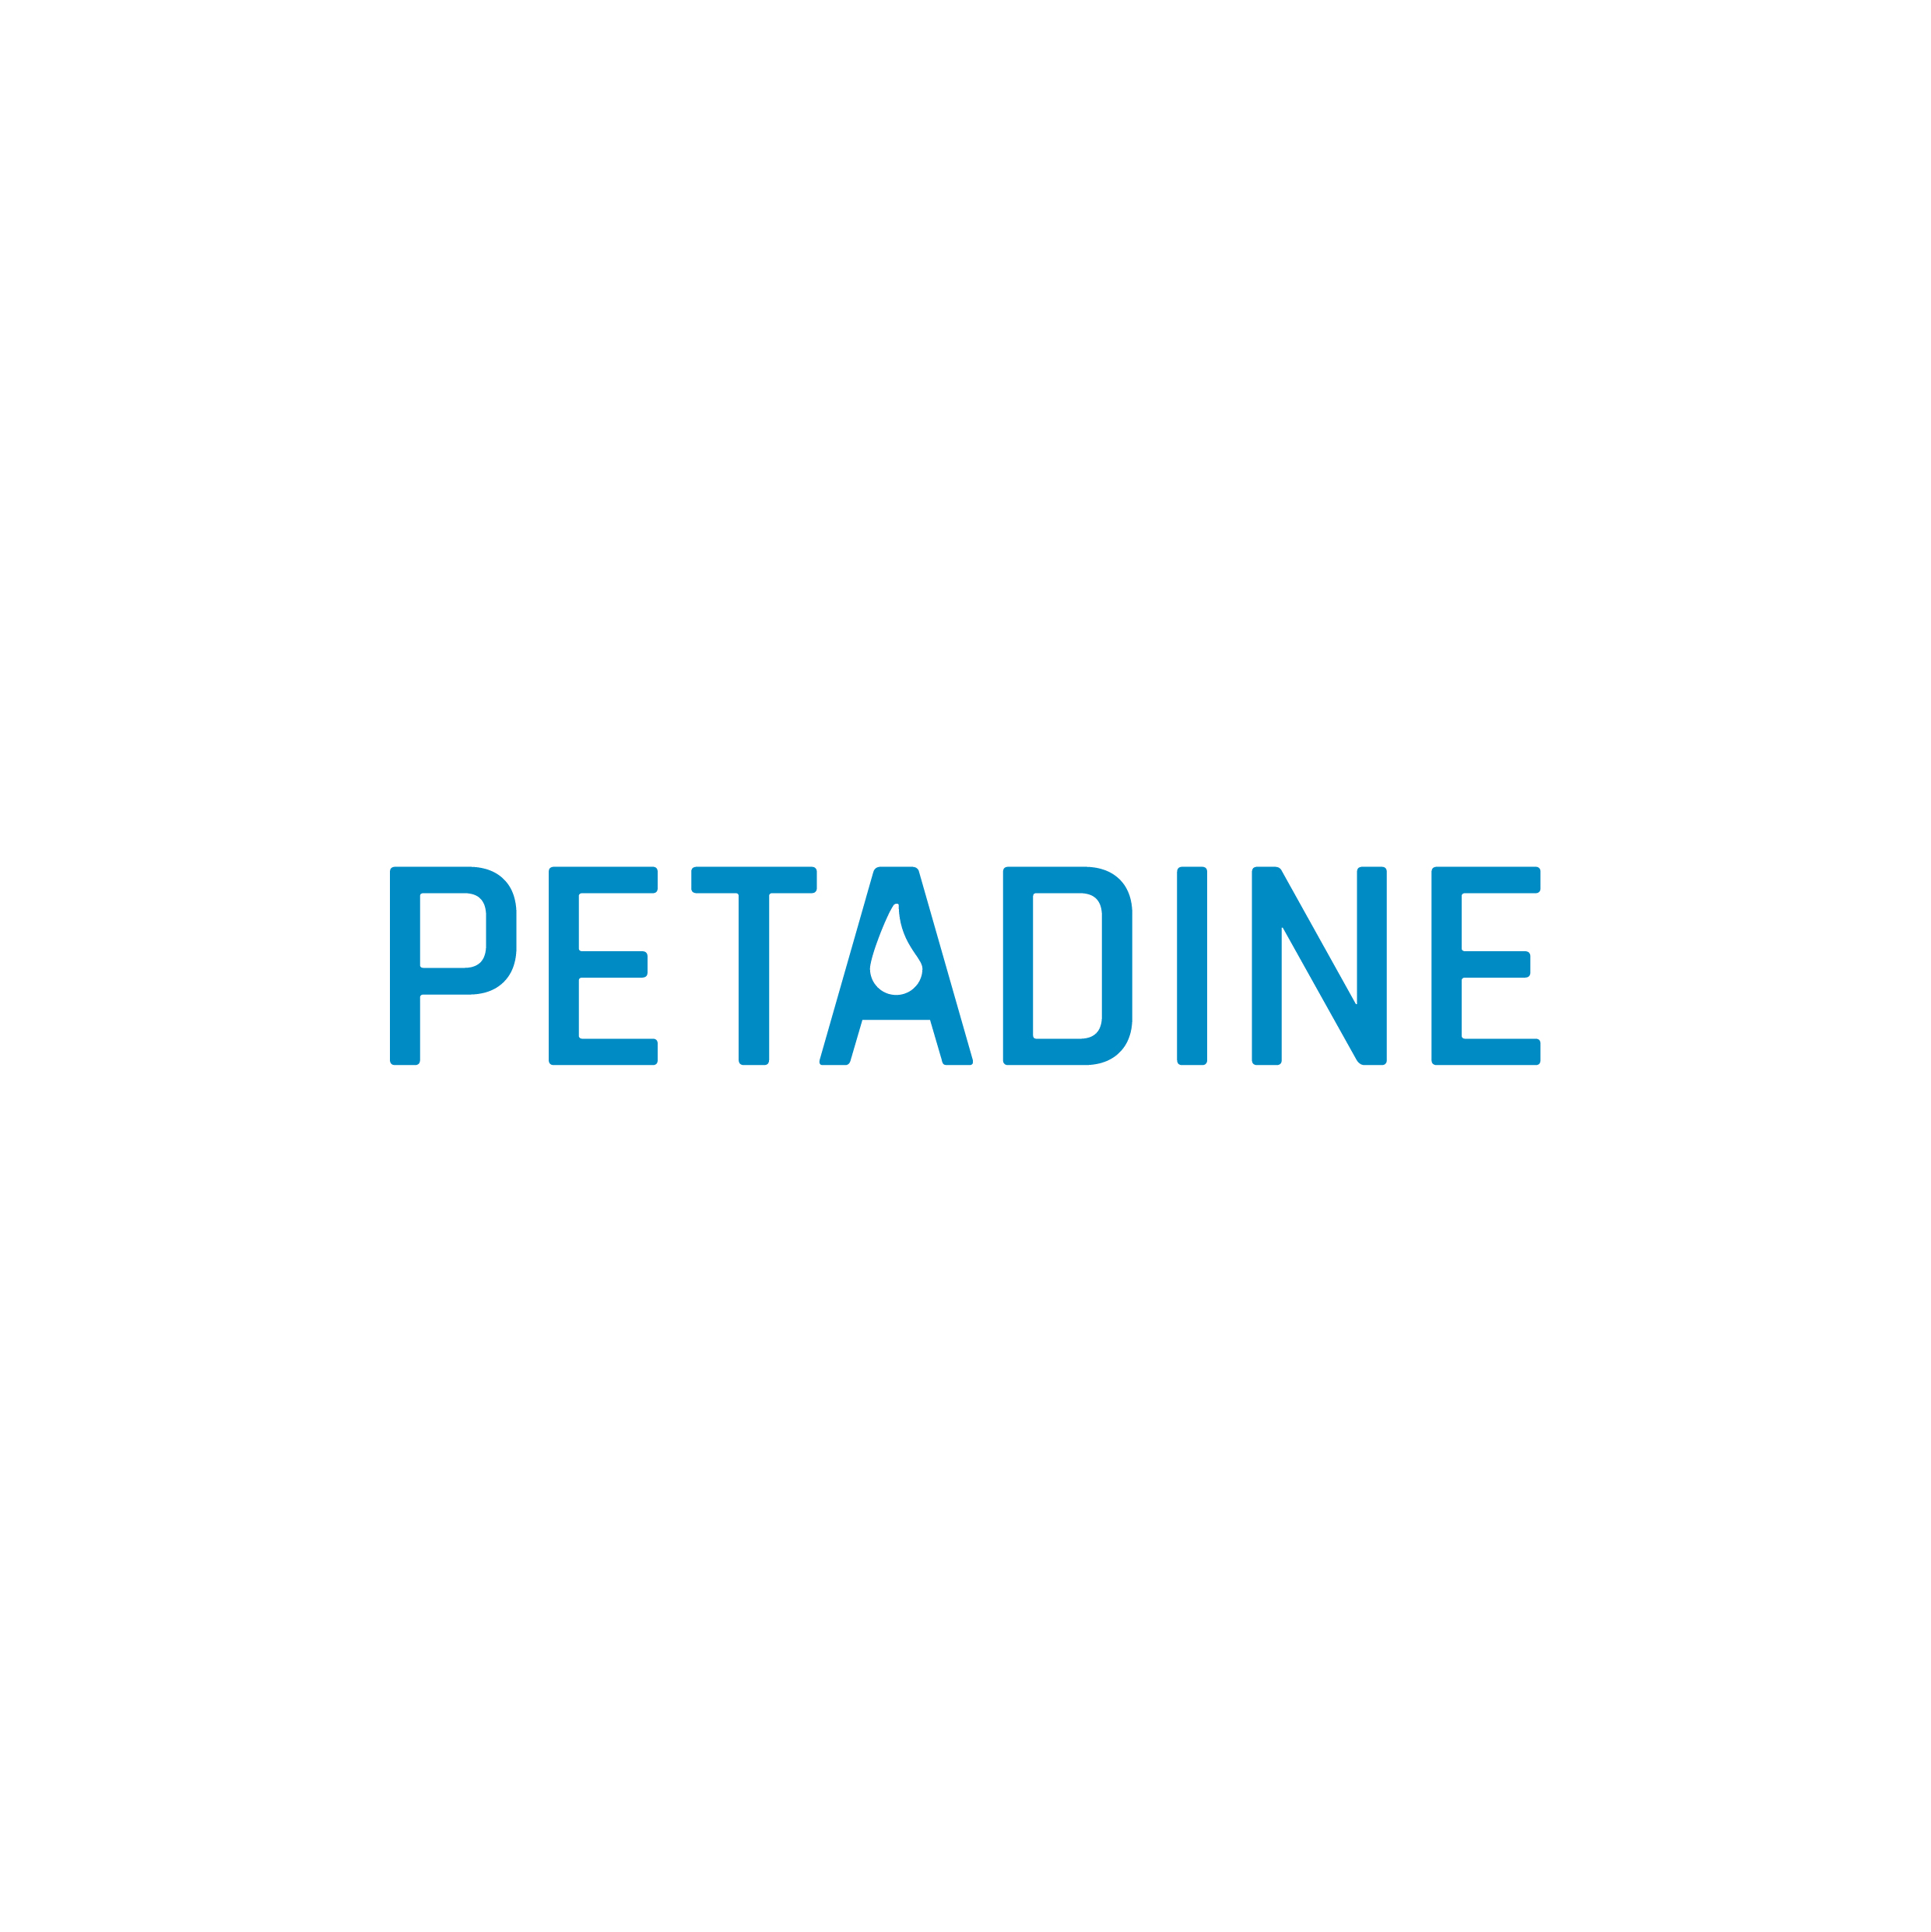 Petadin - logo.jpg